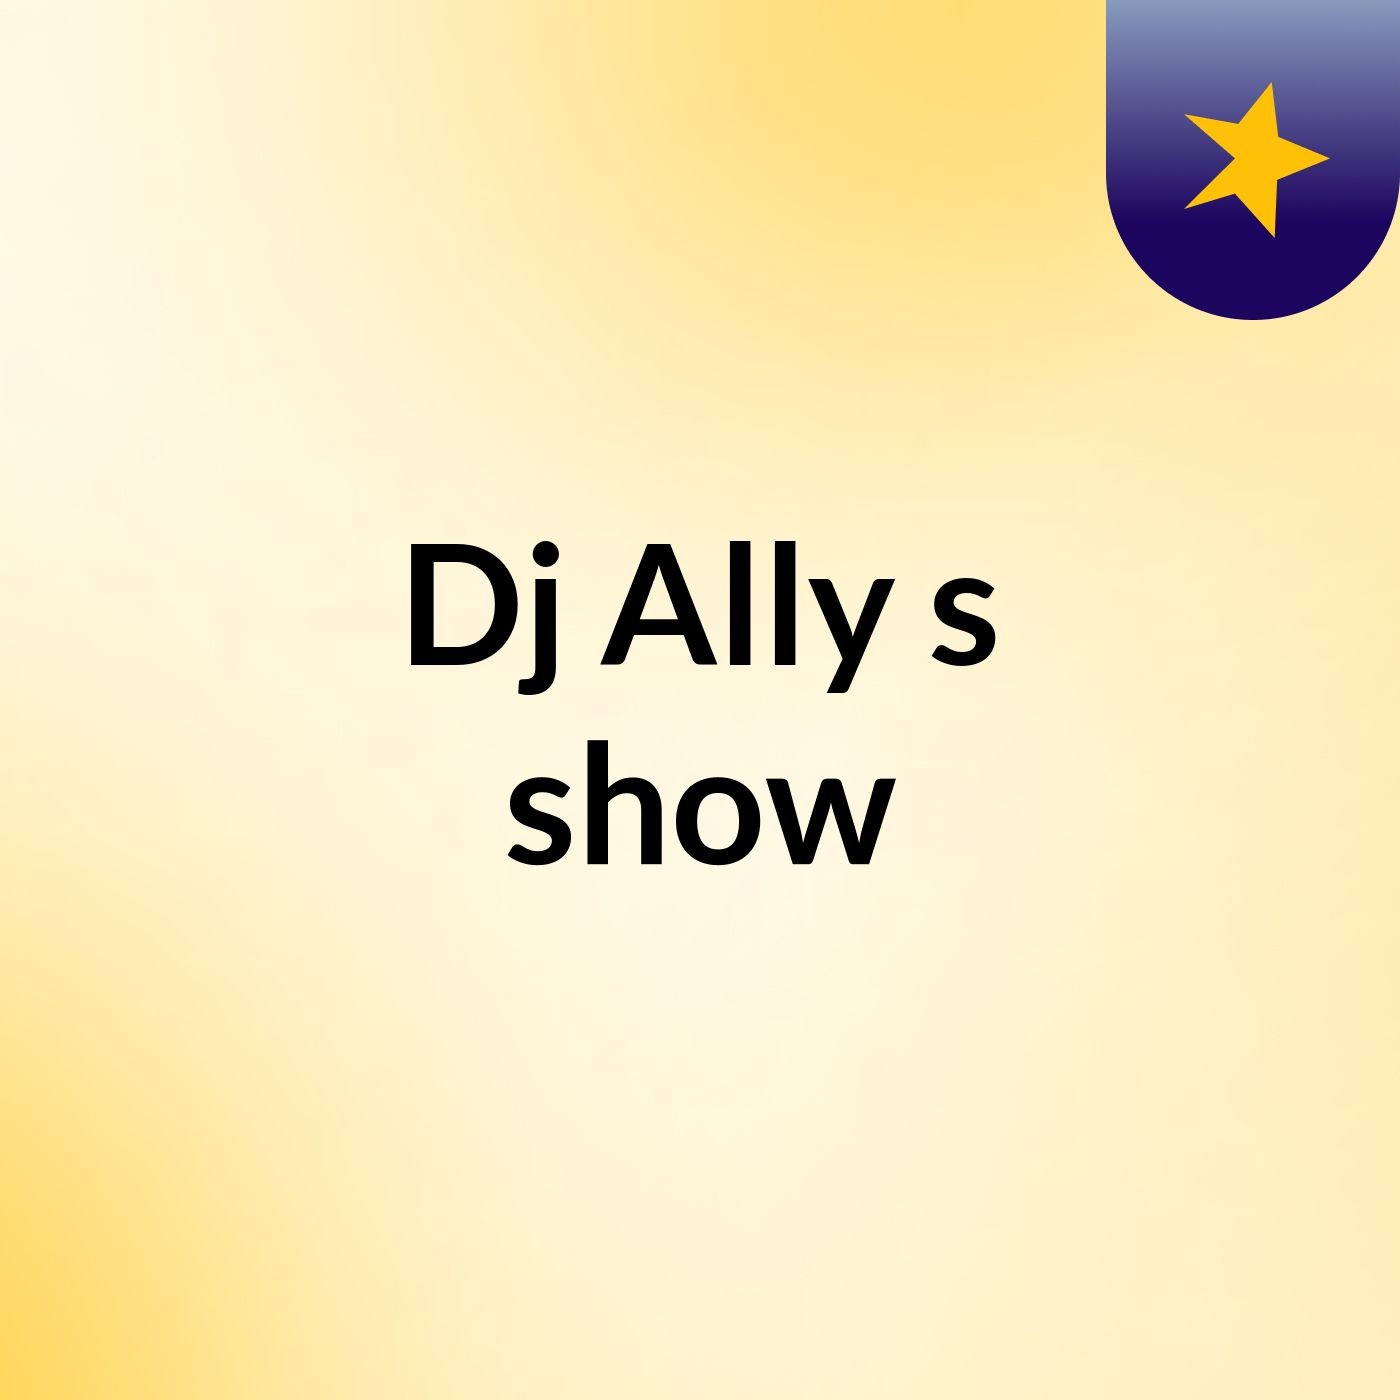 Dj Ally's show